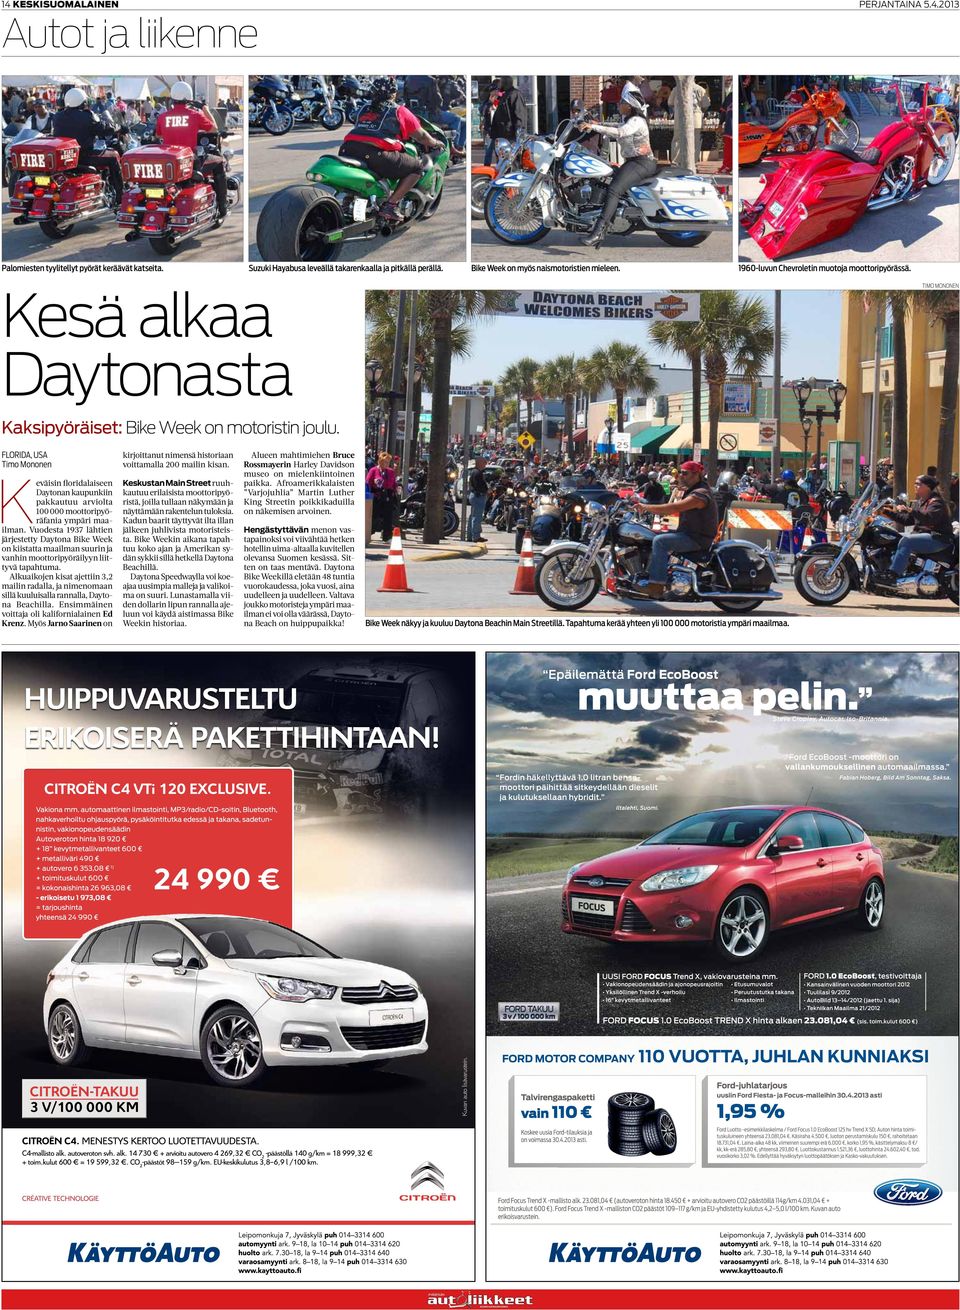 Florida, USA Keväisin floridalaiseen Daytonan kaupunkiin pakkautuu arviolta 100000 moottoripyöräfania ympäri maailman.